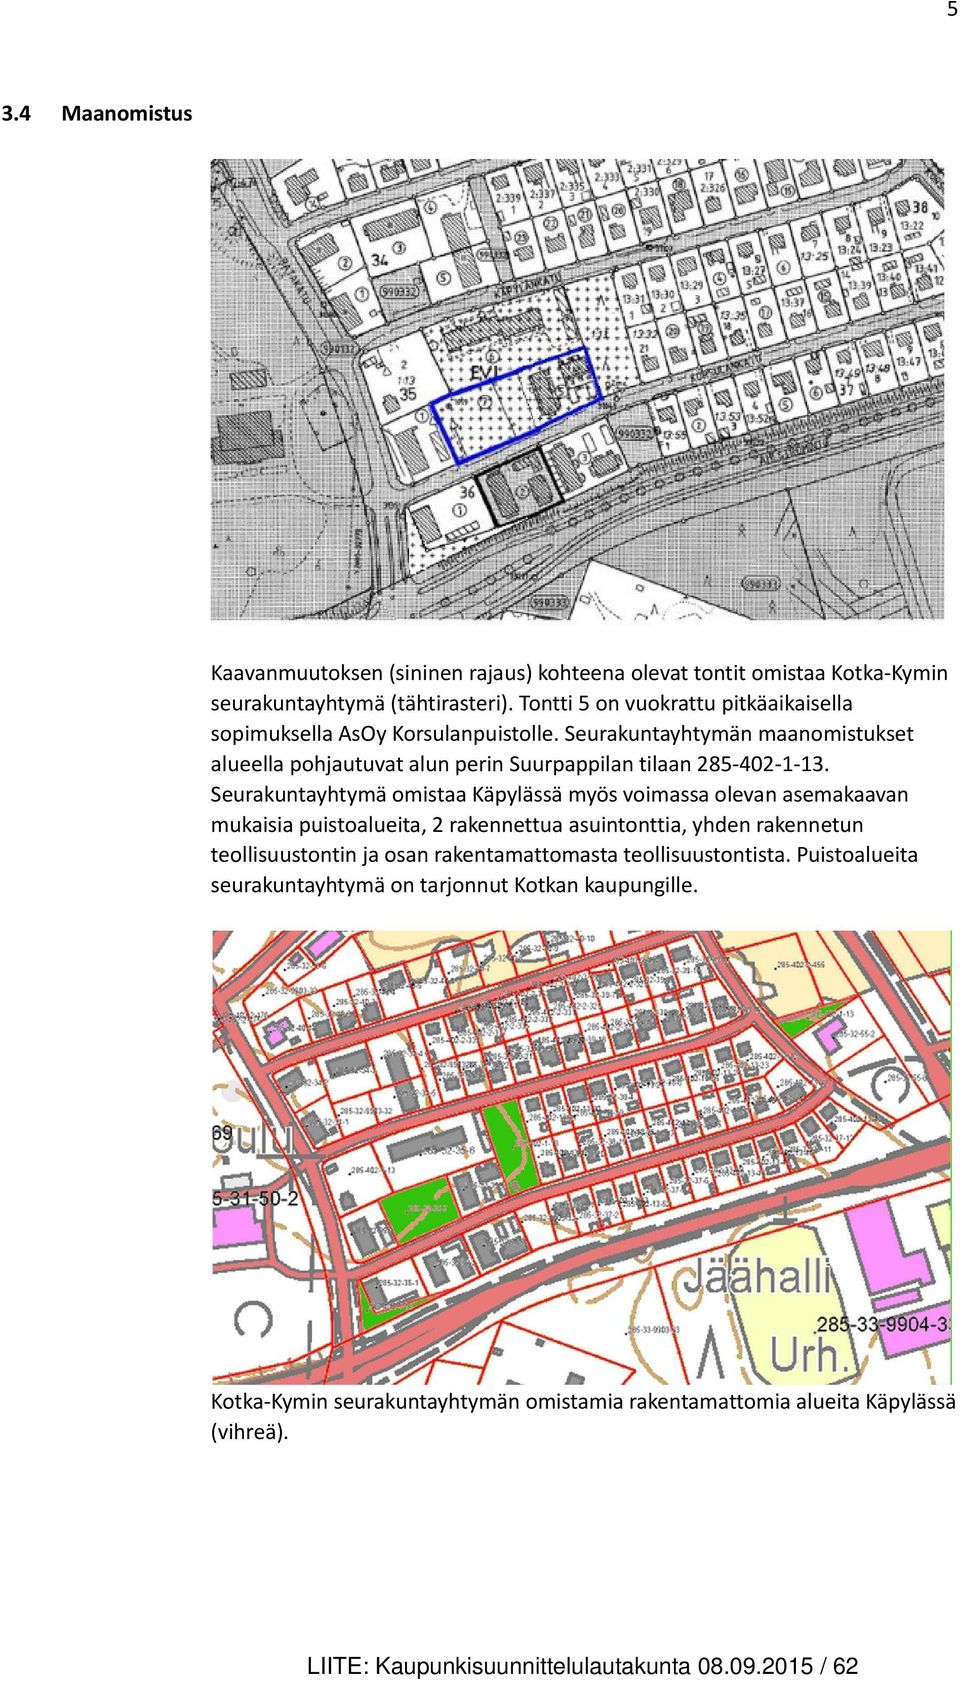 Seurakuntayhtymä omistaa Käpylässä myös voimassa olevan asemakaavan mukaisia puistoalueita, 2 rakennettua asuintonttia, yhden rakennetun teollisuustontin ja osan